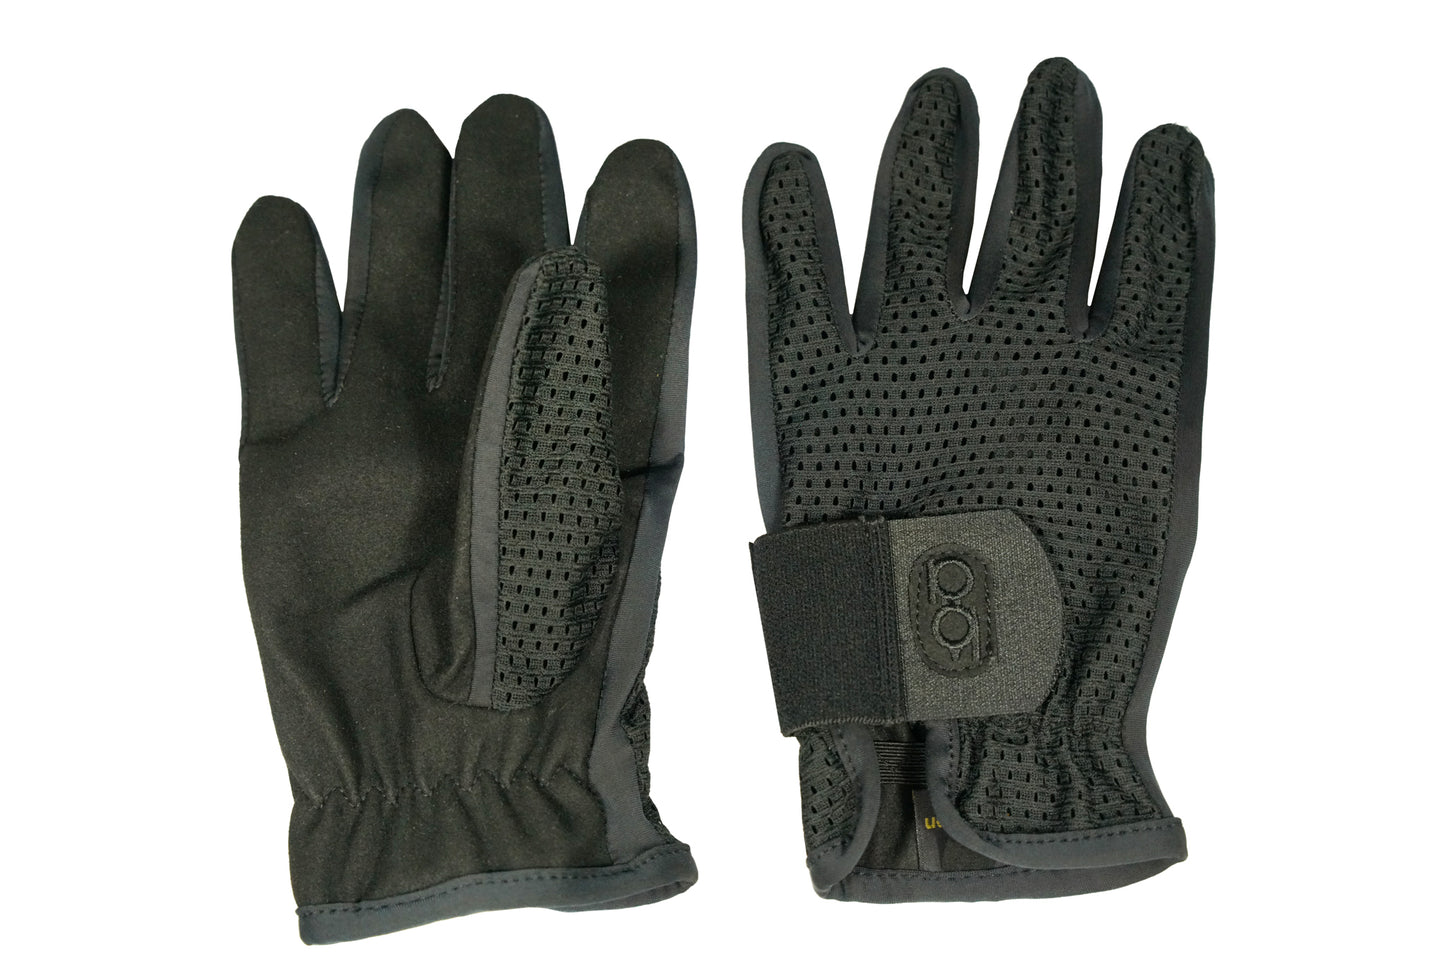 Bob Allen Shotgunner's Gloves